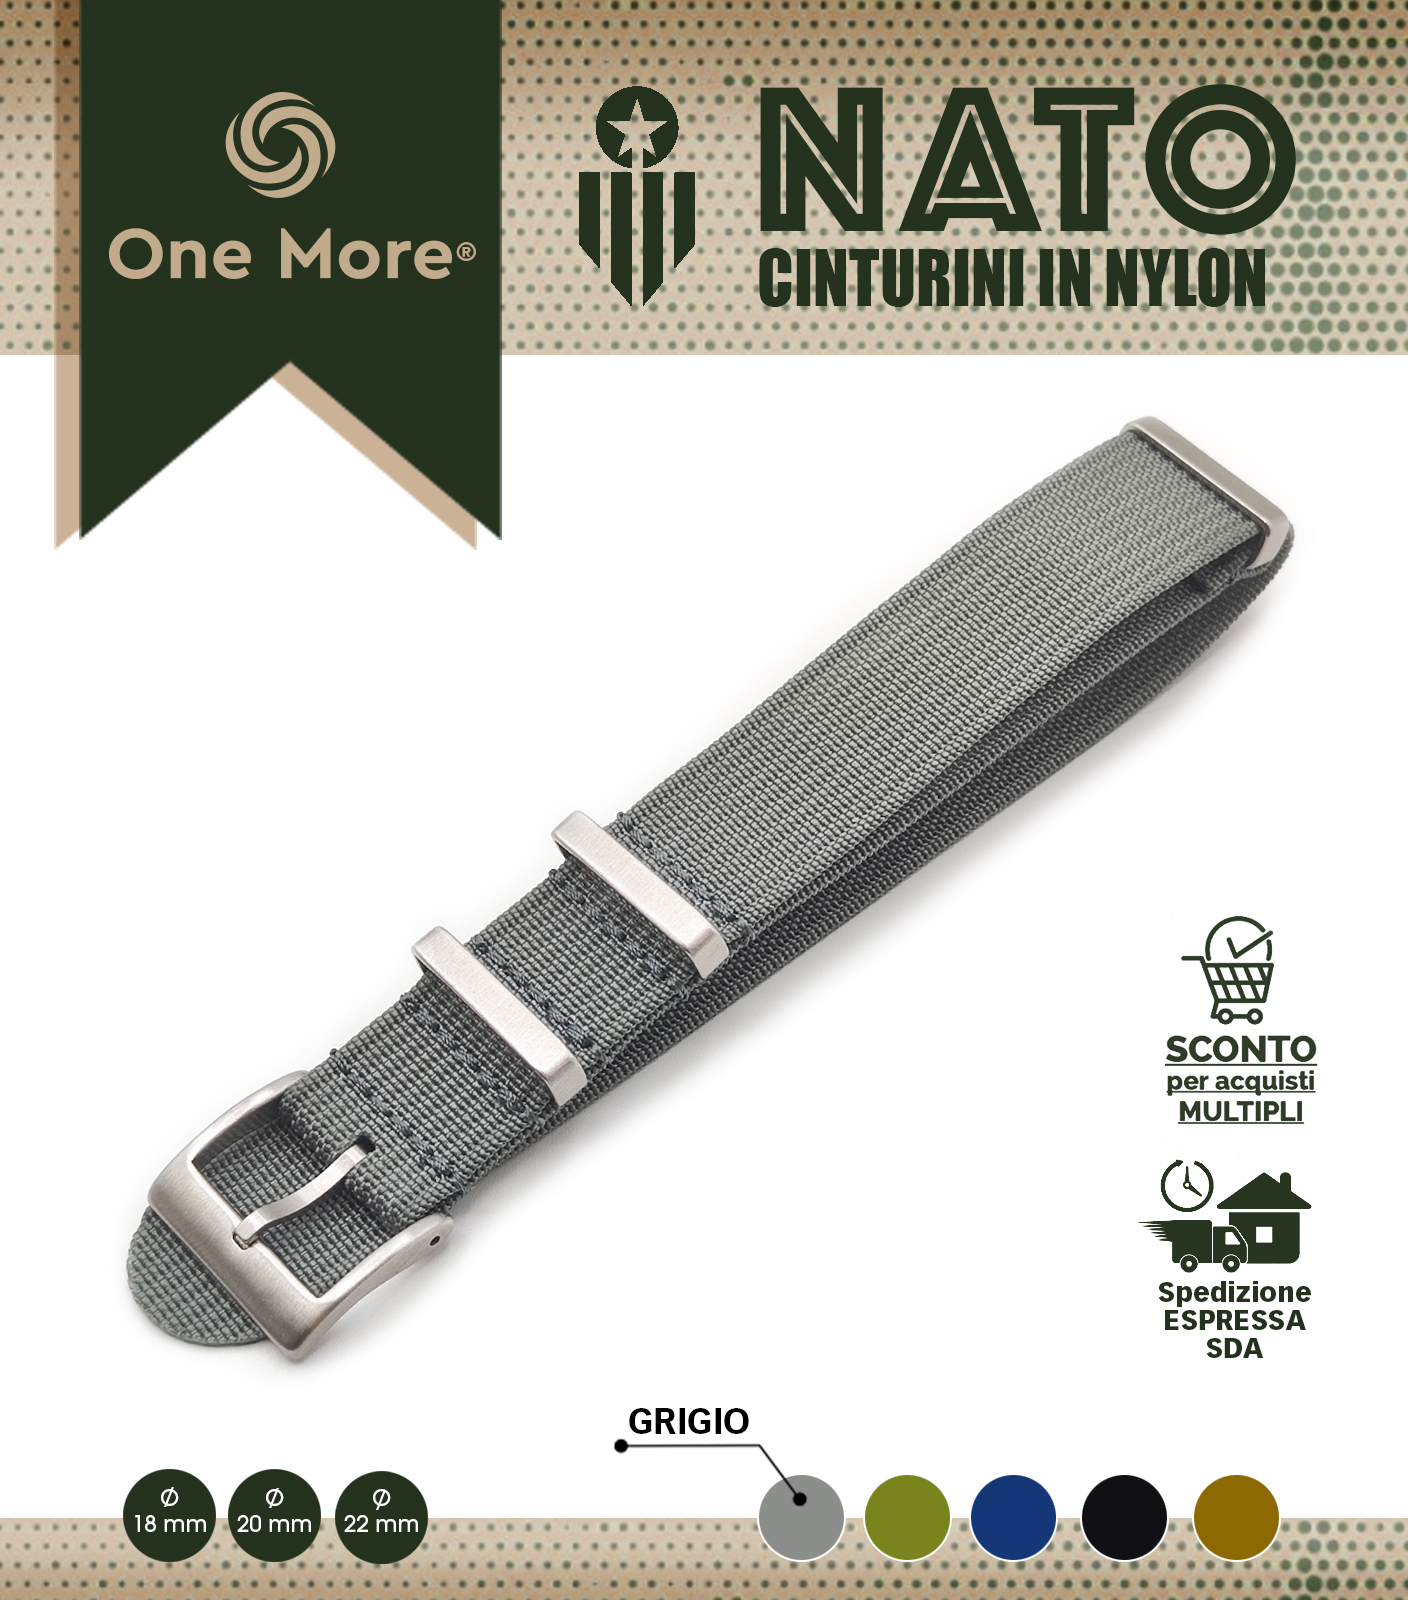 NATO_Grigio